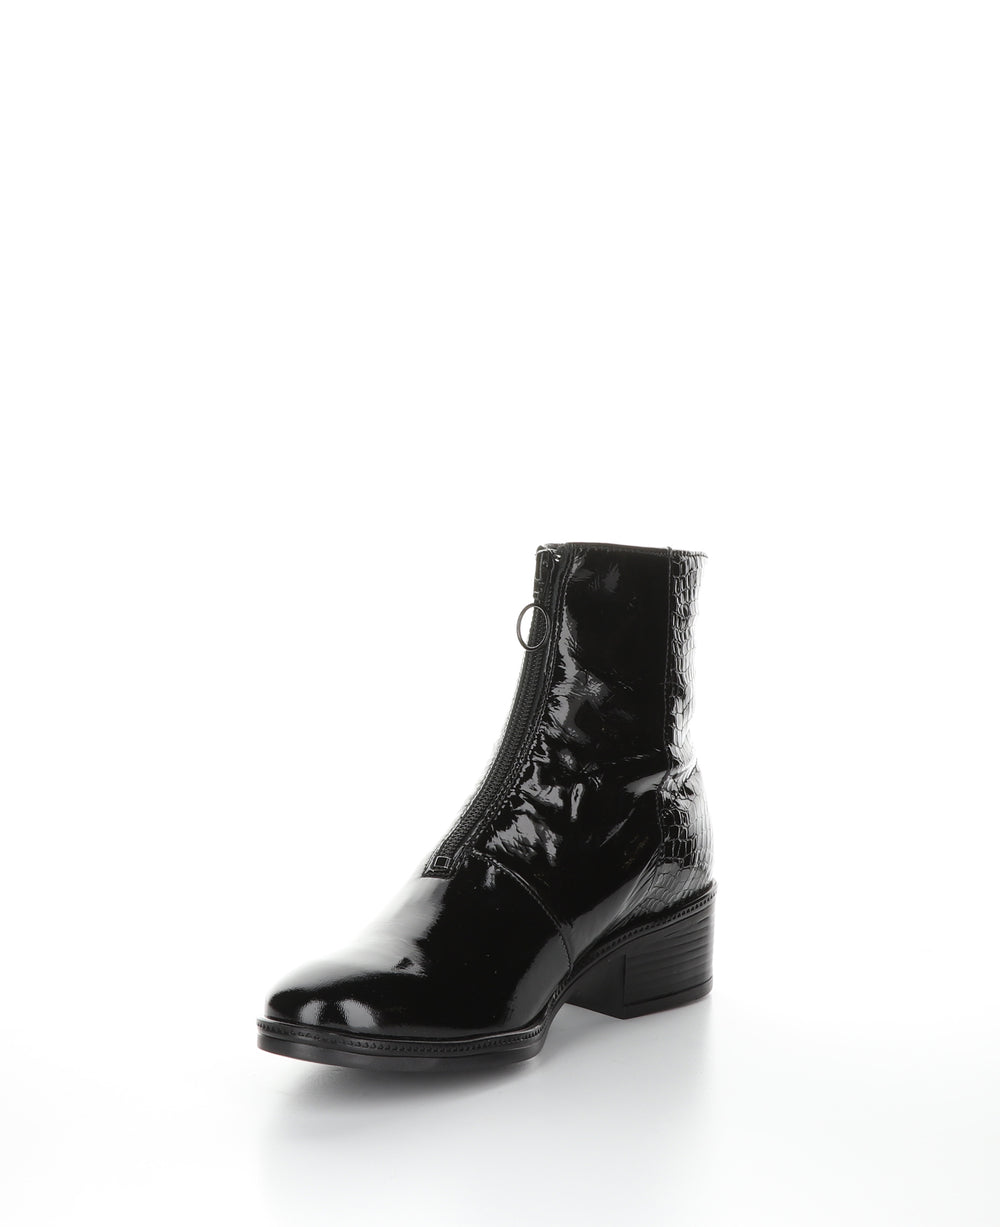 JORDON Black Zip Up Ankle Boots|JORDON Bottines avec Fermeture Zippée in Noir